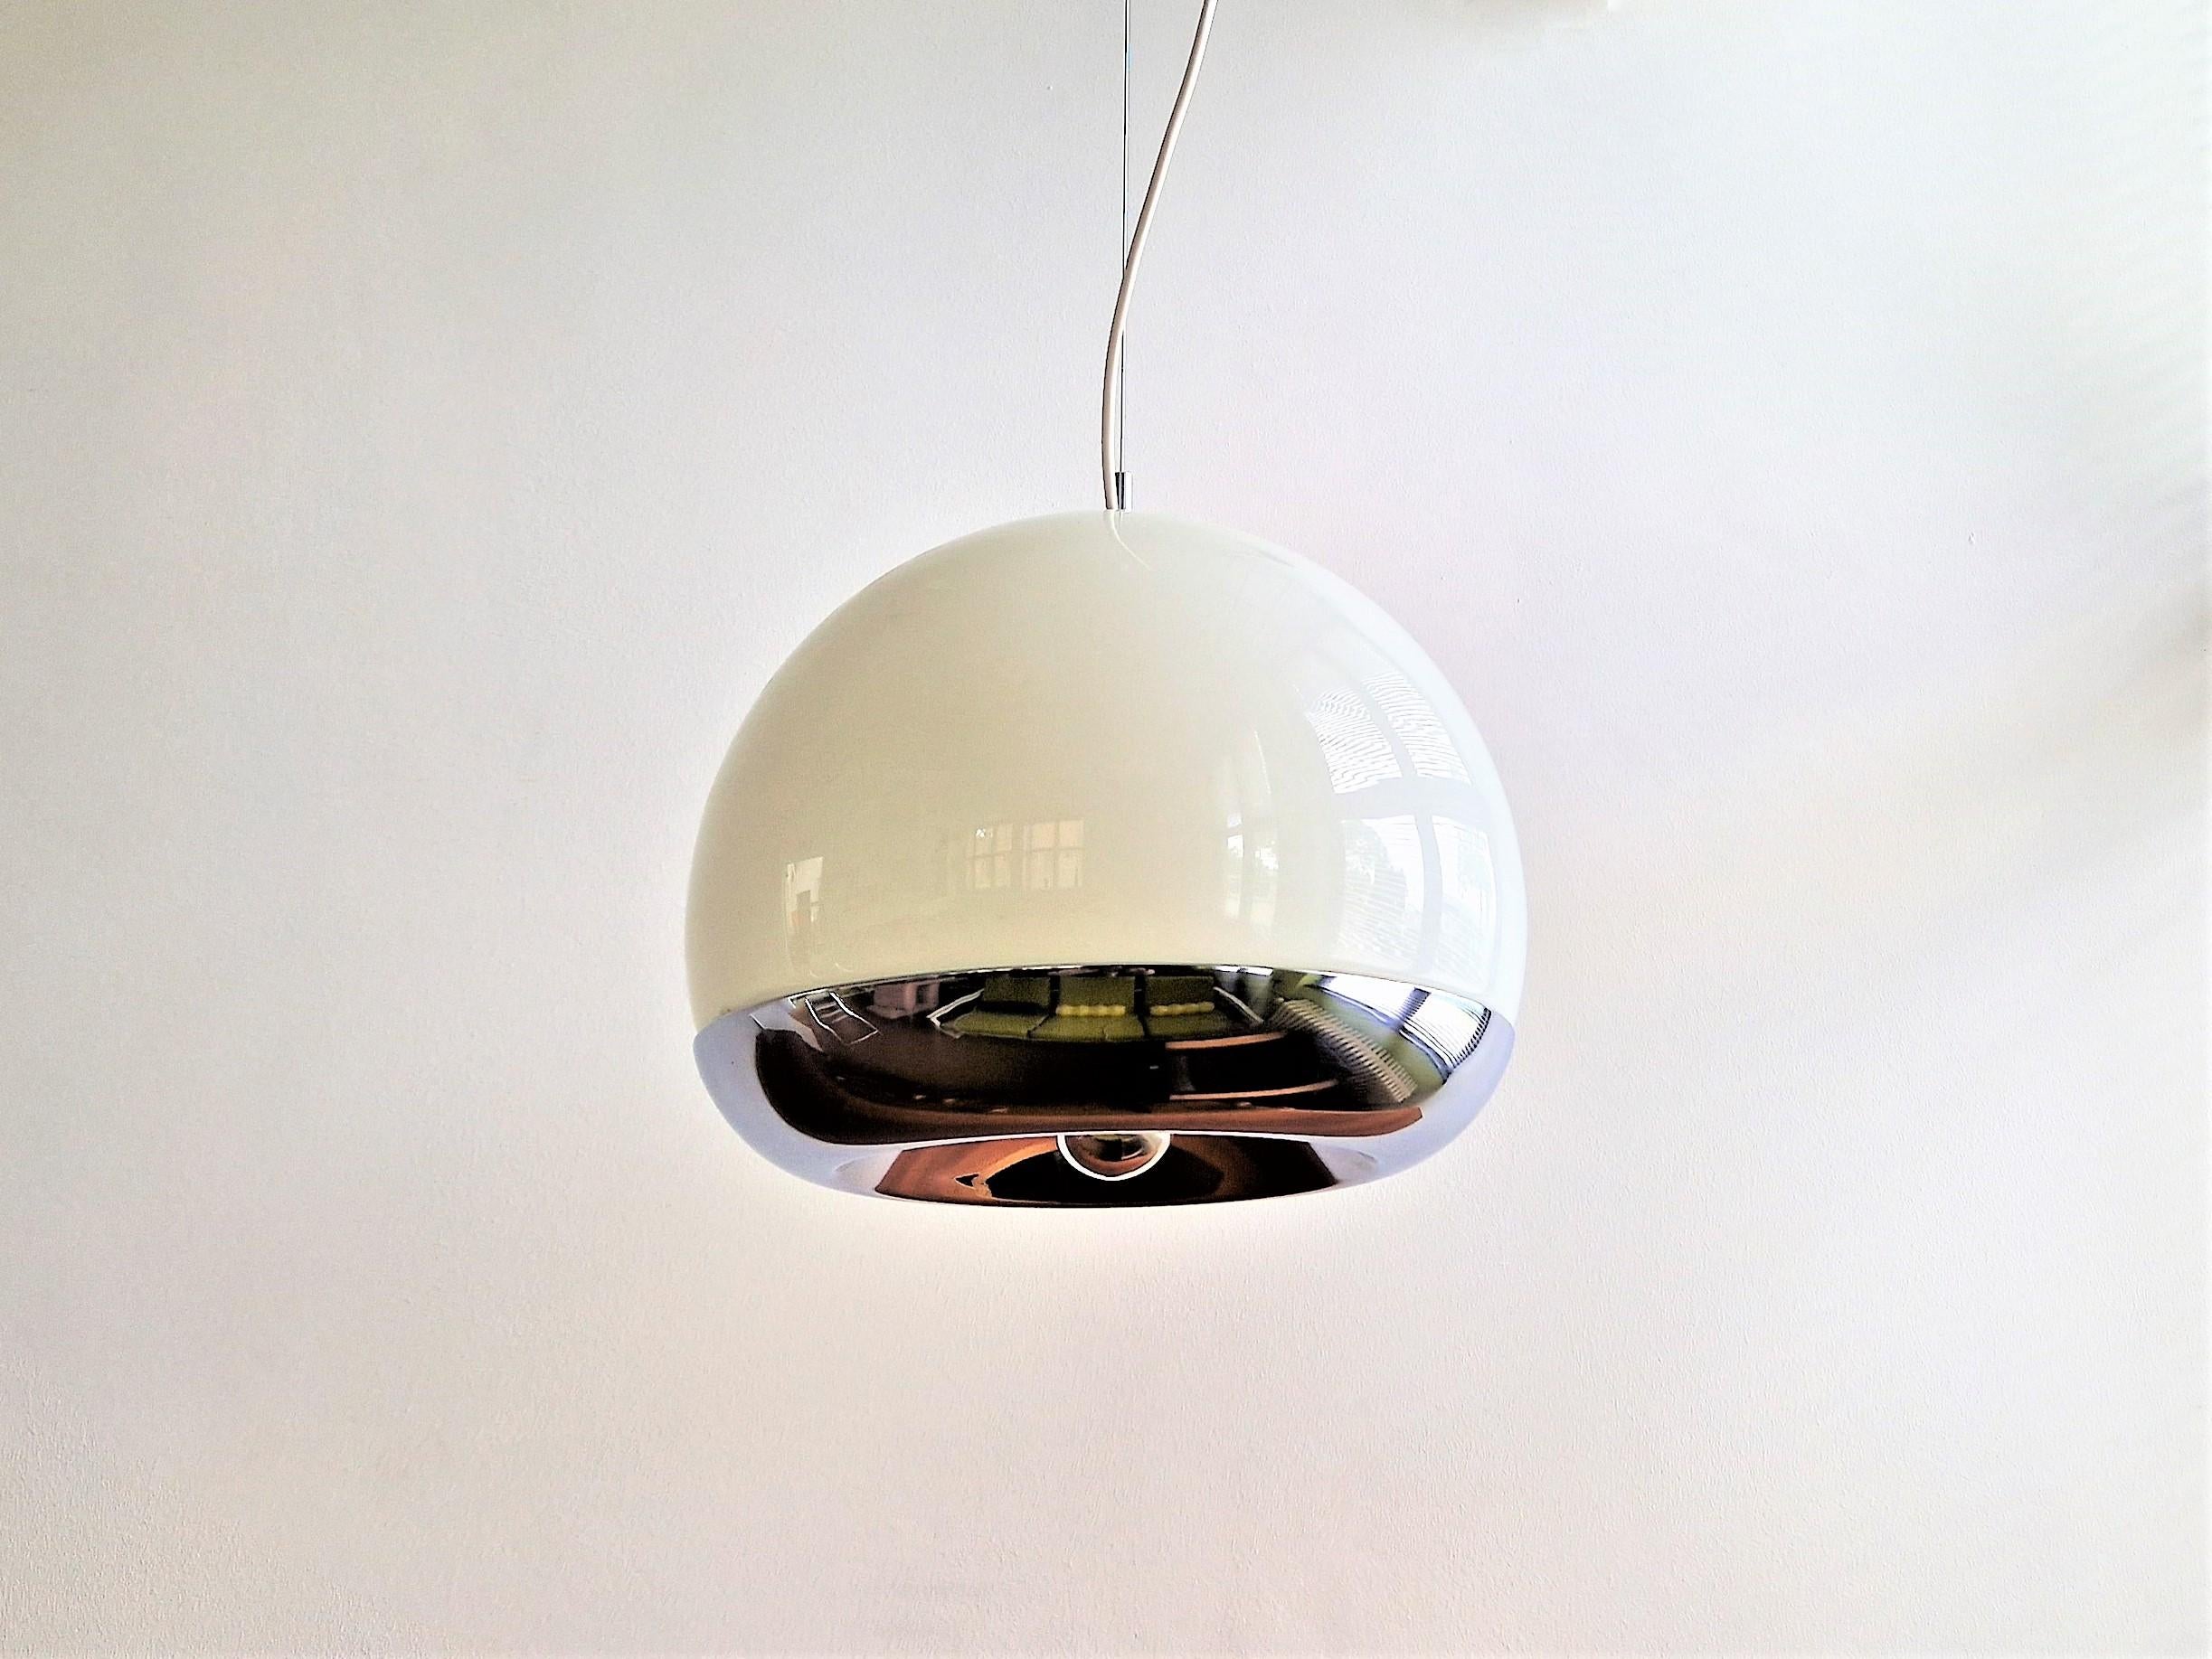 Cette magnifique lampe suspendue a été produite à partir d'un projet des architectes De Martini, Falconi & Fois pour Reggiani. Il se compose d'un bol en verre opalin blanc qui peut contenir 2 ampoules, avec une partie inférieure en métal chromé qui